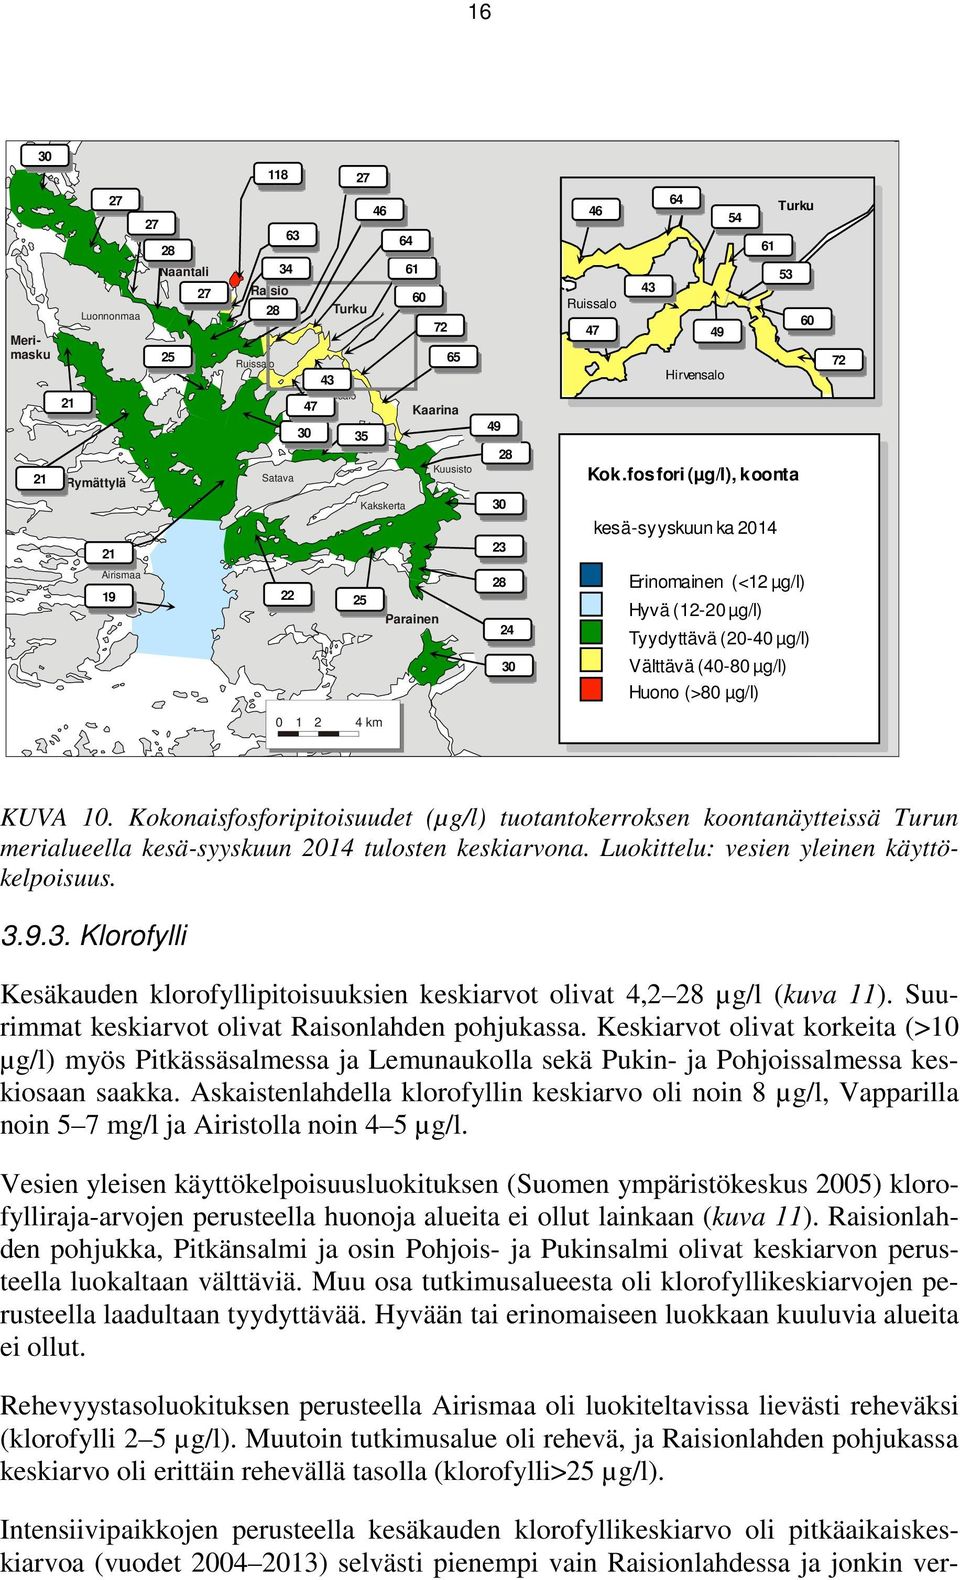 4 km KUVA 10. Kokonaisfosforipitoisuudet (µg/l) tuotantokerroksen koontanäytteissä Turun merialueella kesä-syyskuun 2014 tulosten keskiarvona. Luokittelu: vesien yleinen käyttökelpoisuus. 3.